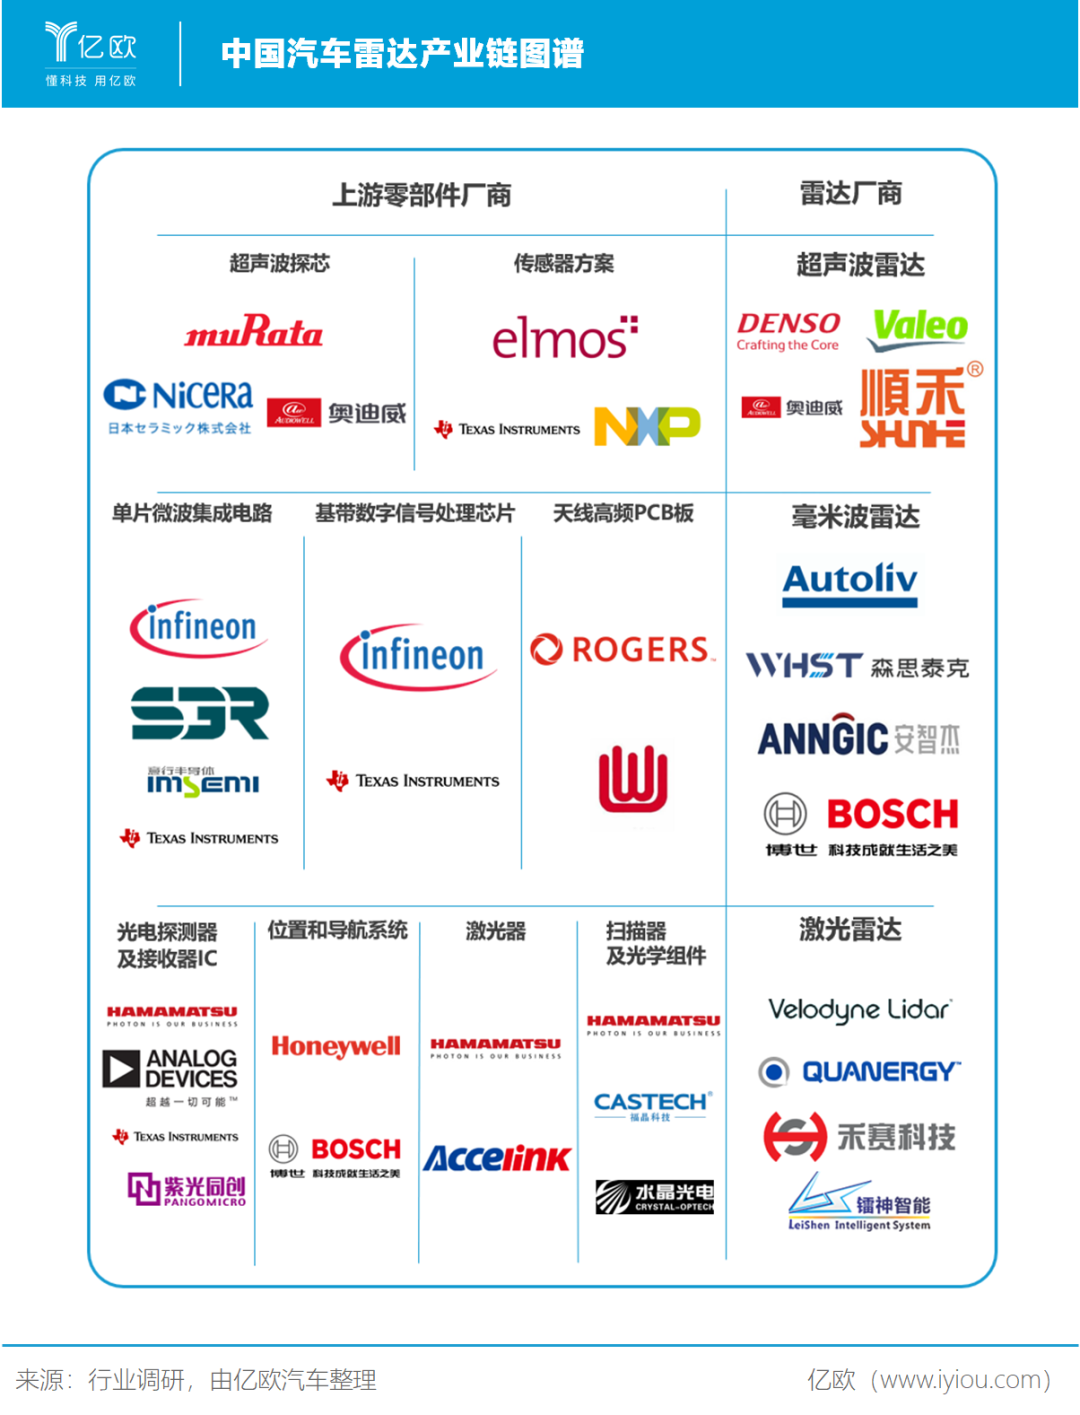 中国汽车雷达产业链图谱